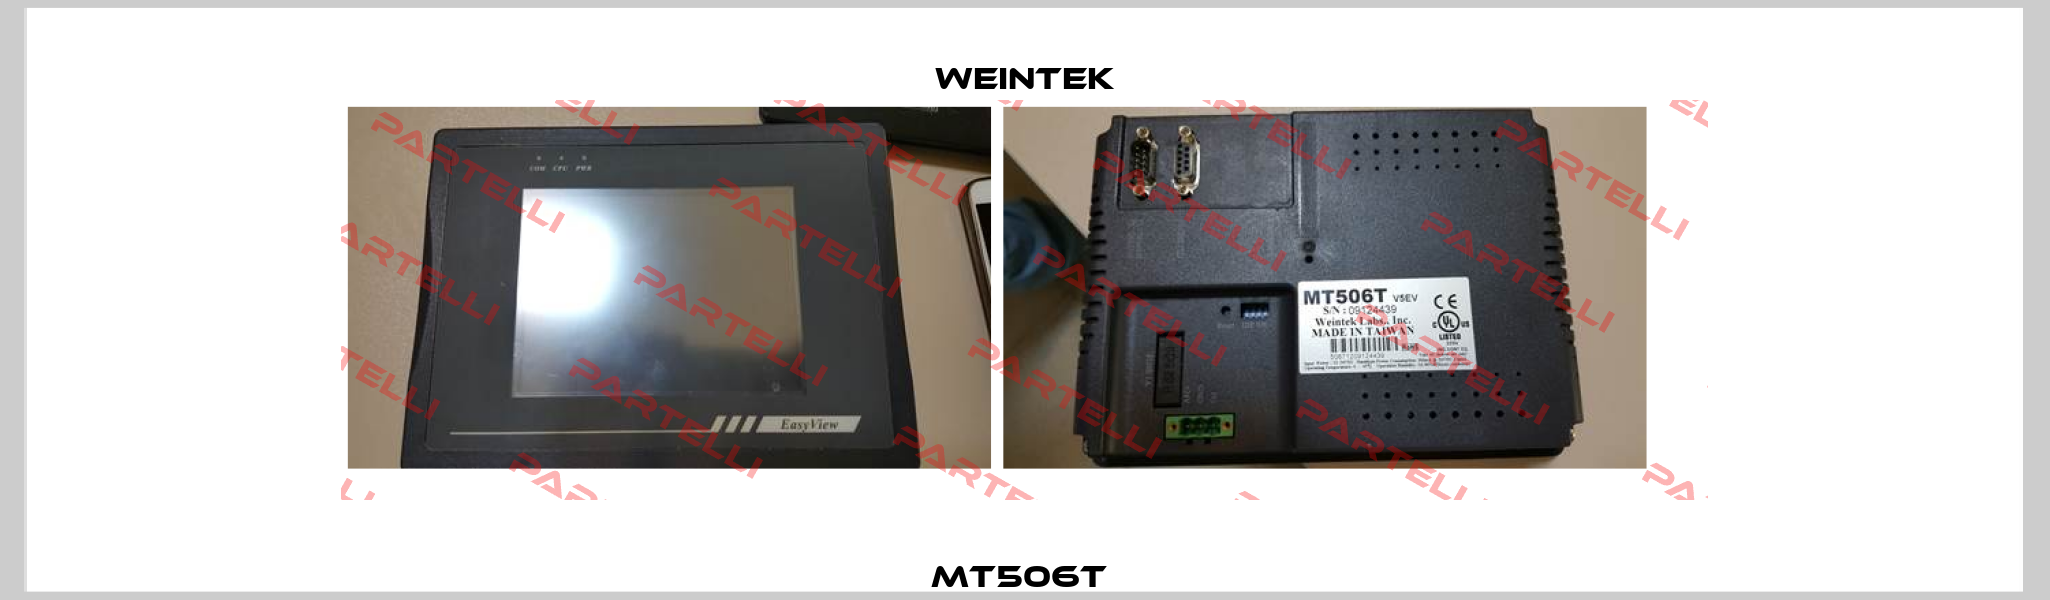 MT506T  Weintek